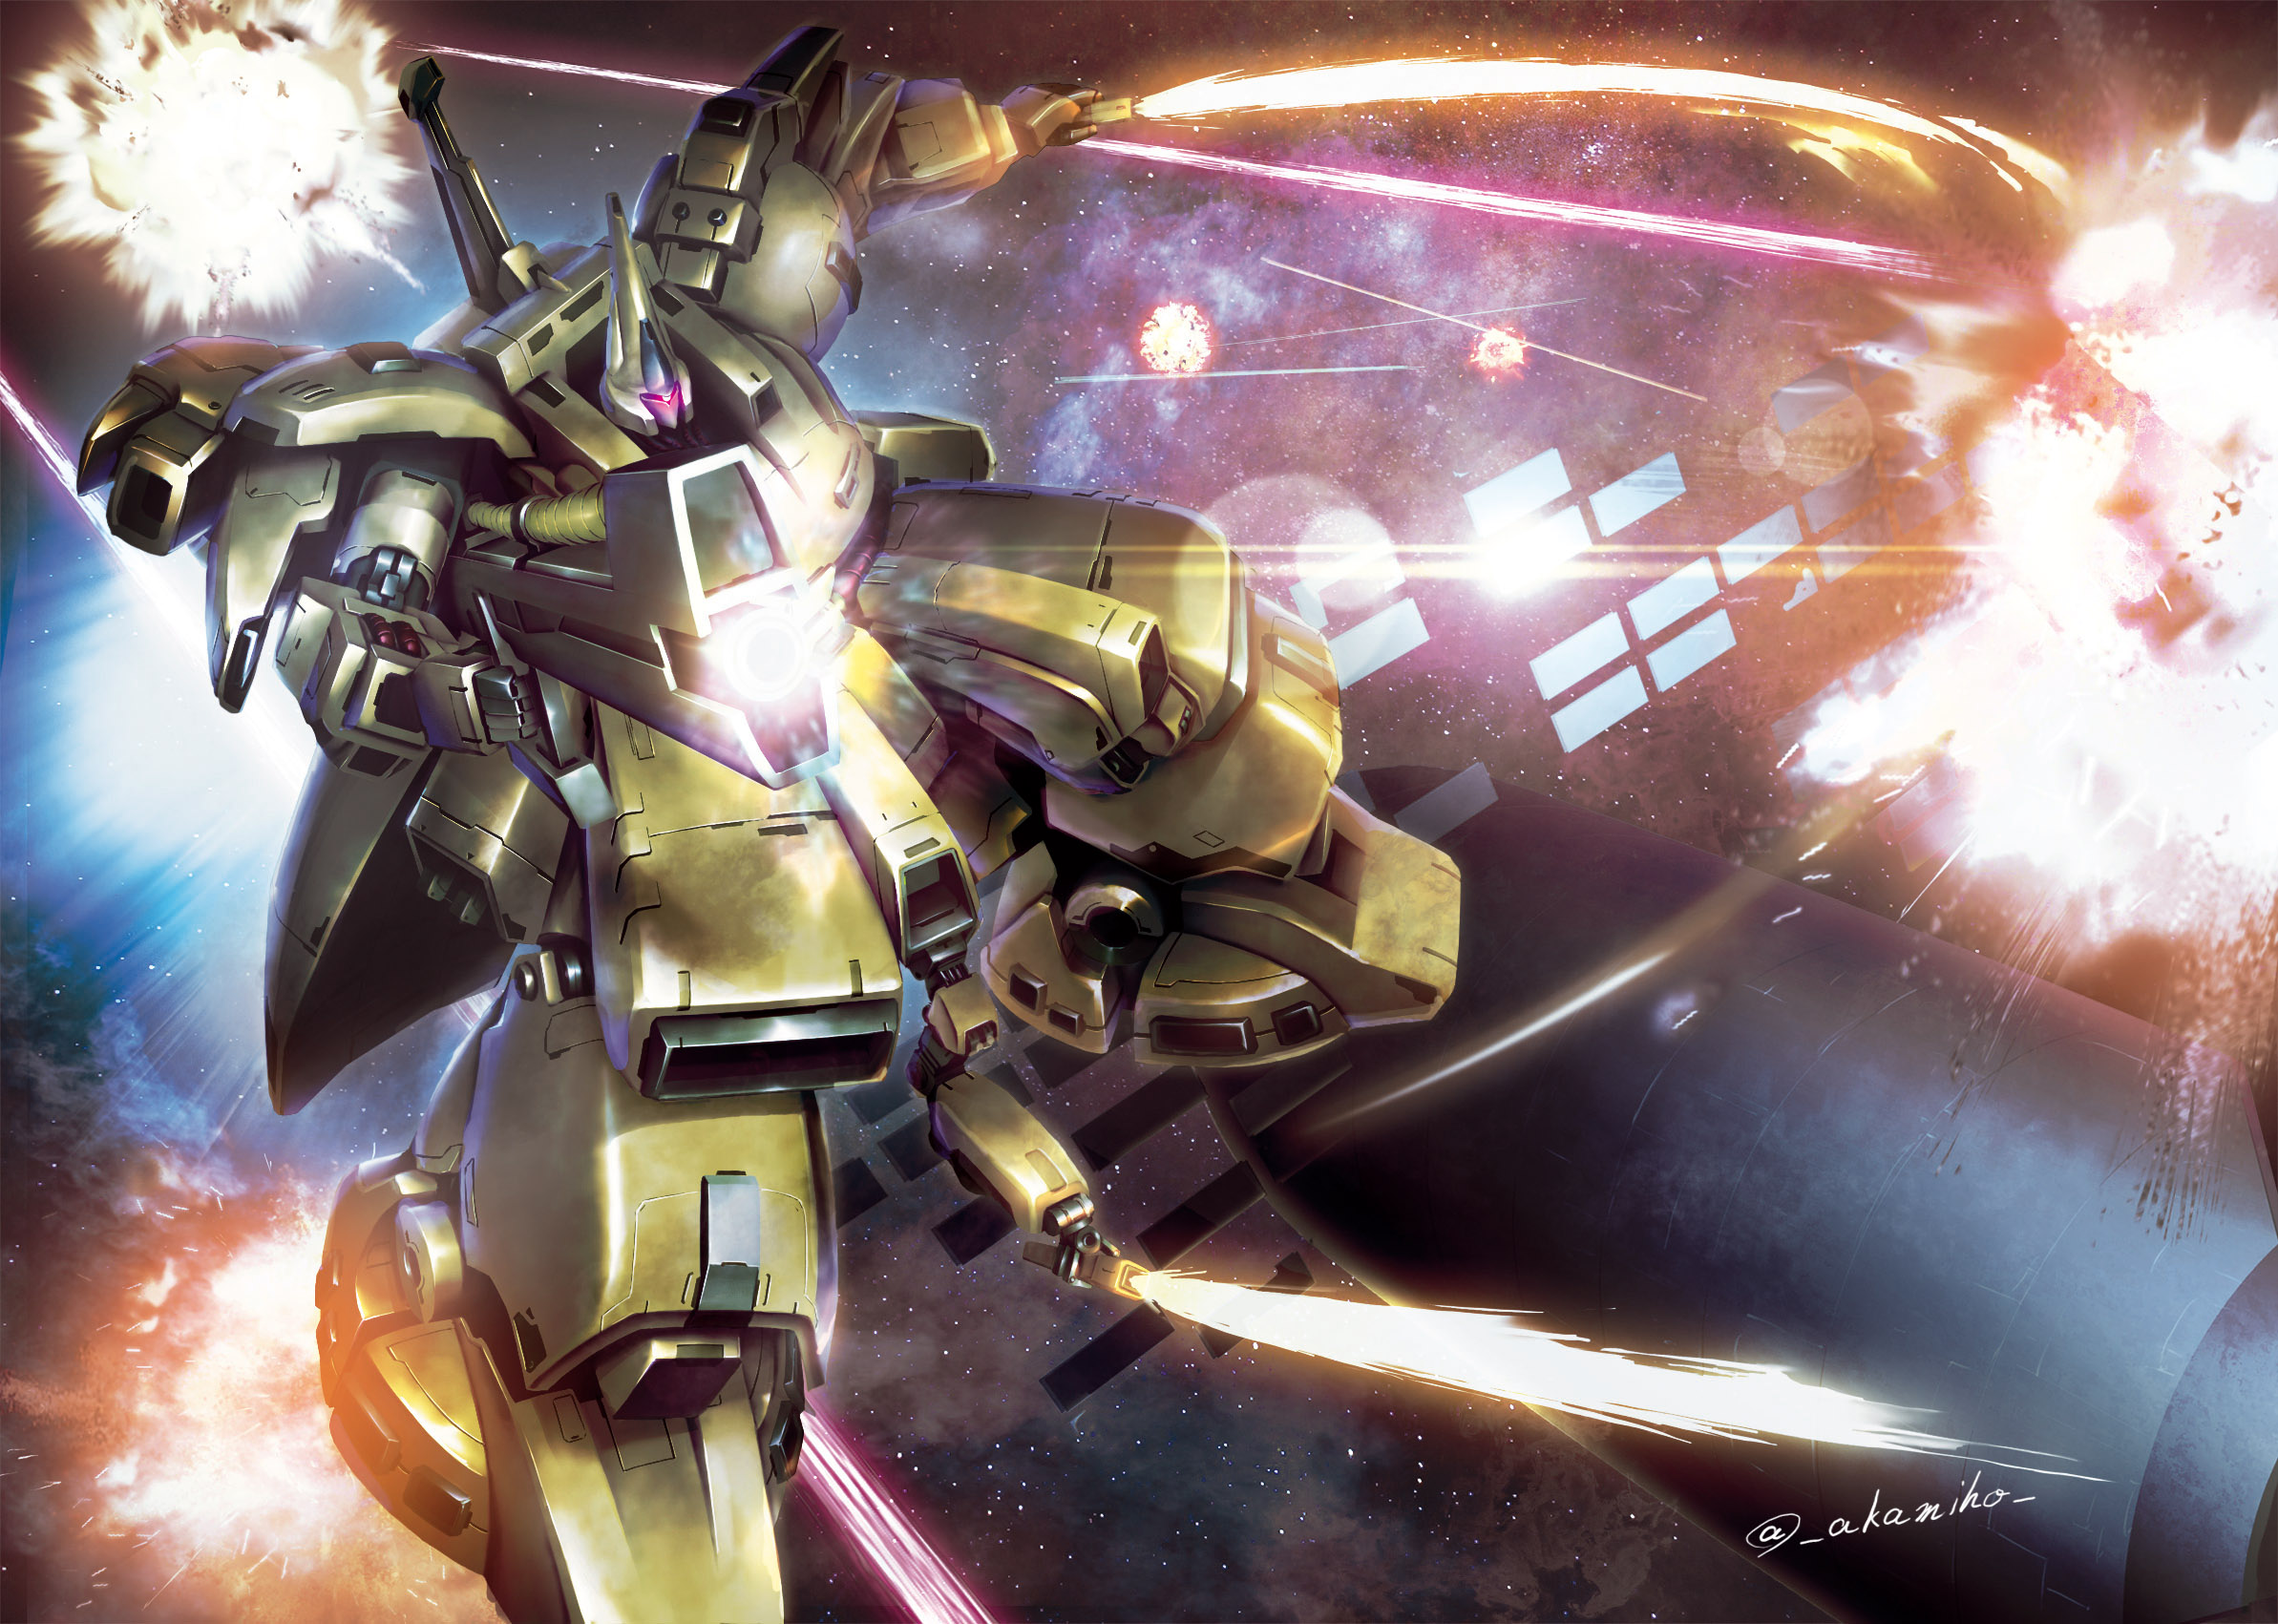 Anime 2386x1701 The-O Mobile Suit Zeta Gundam Mobile Suit anime mechs Super Robot Taisen artwork digital art fan art